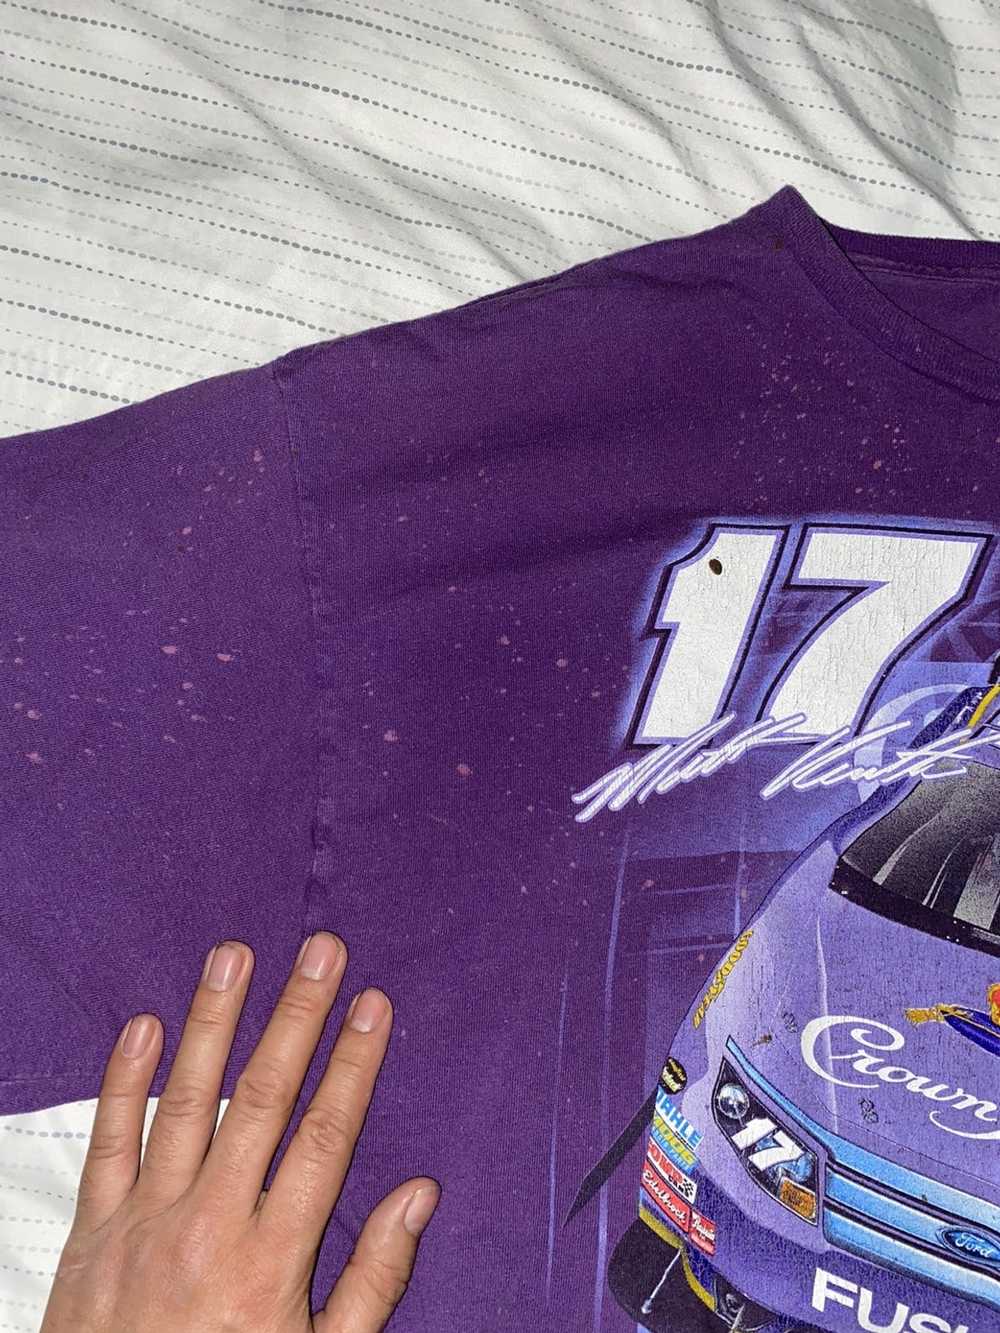 NASCAR Matt Kenseth Nascar Shirt - image 6